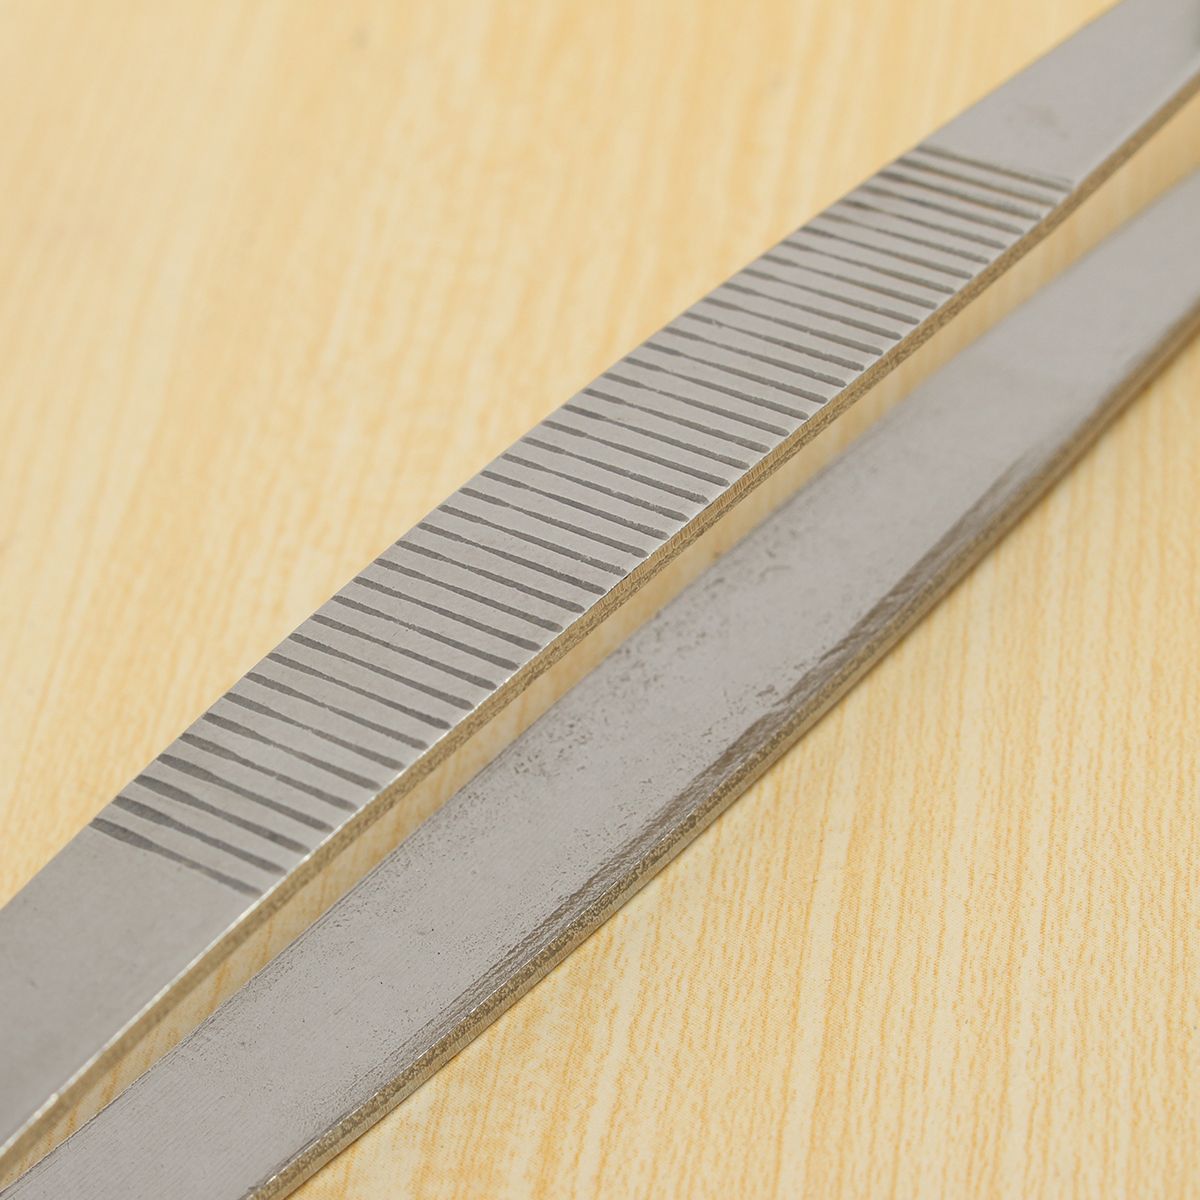 30cm-Stainless-Steel-Silver-Long-Tongs-Straight-Tweezers-Tool-1110841